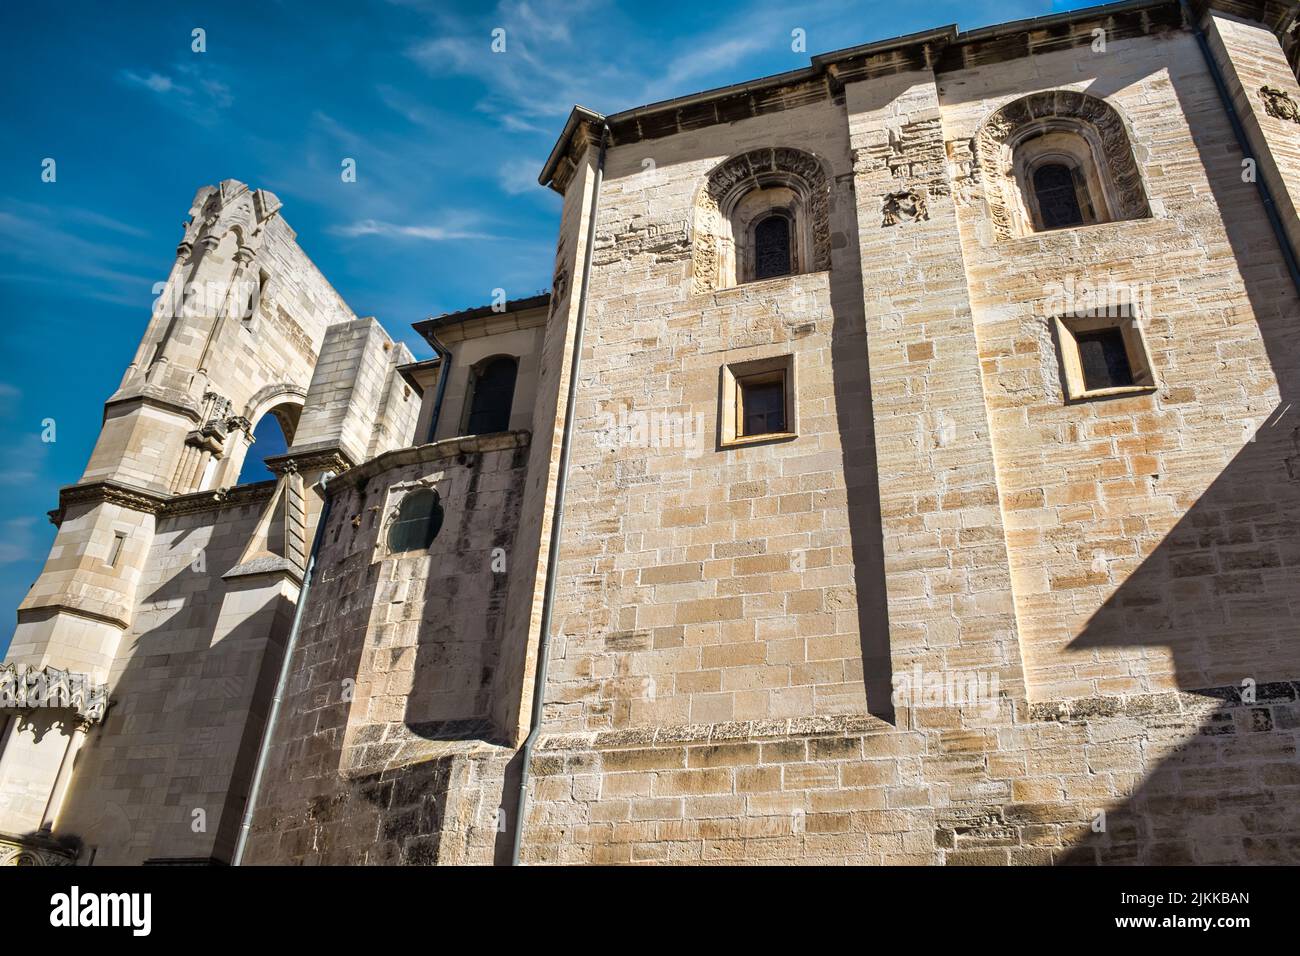 Lateral sur de la catedral siglo XIII de Cuenca, España Stock Photo